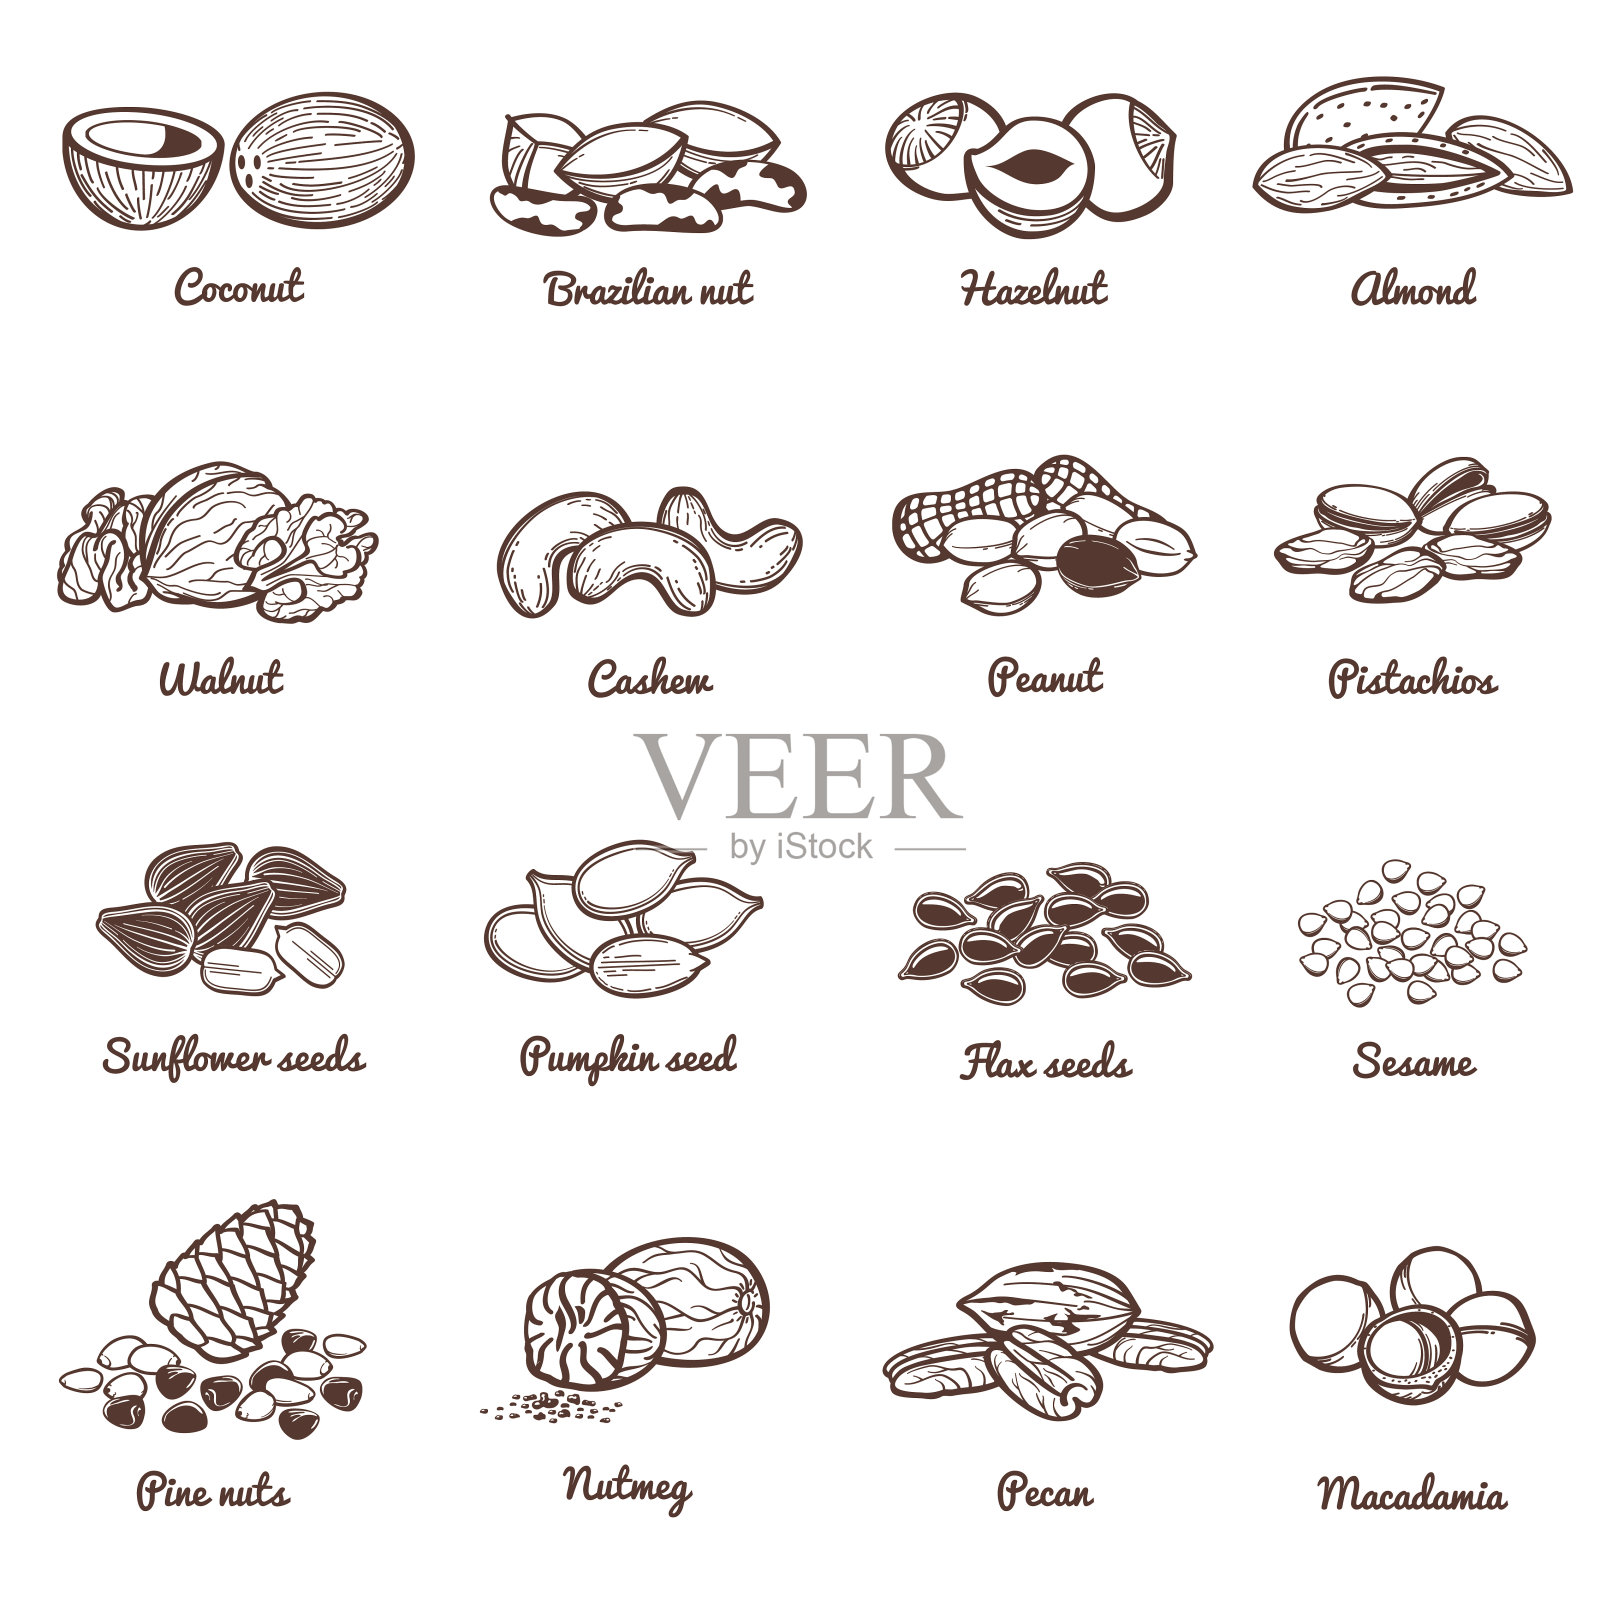 可食用坚果和种子矢量图标。蛋白质健康食品套装设计元素图片